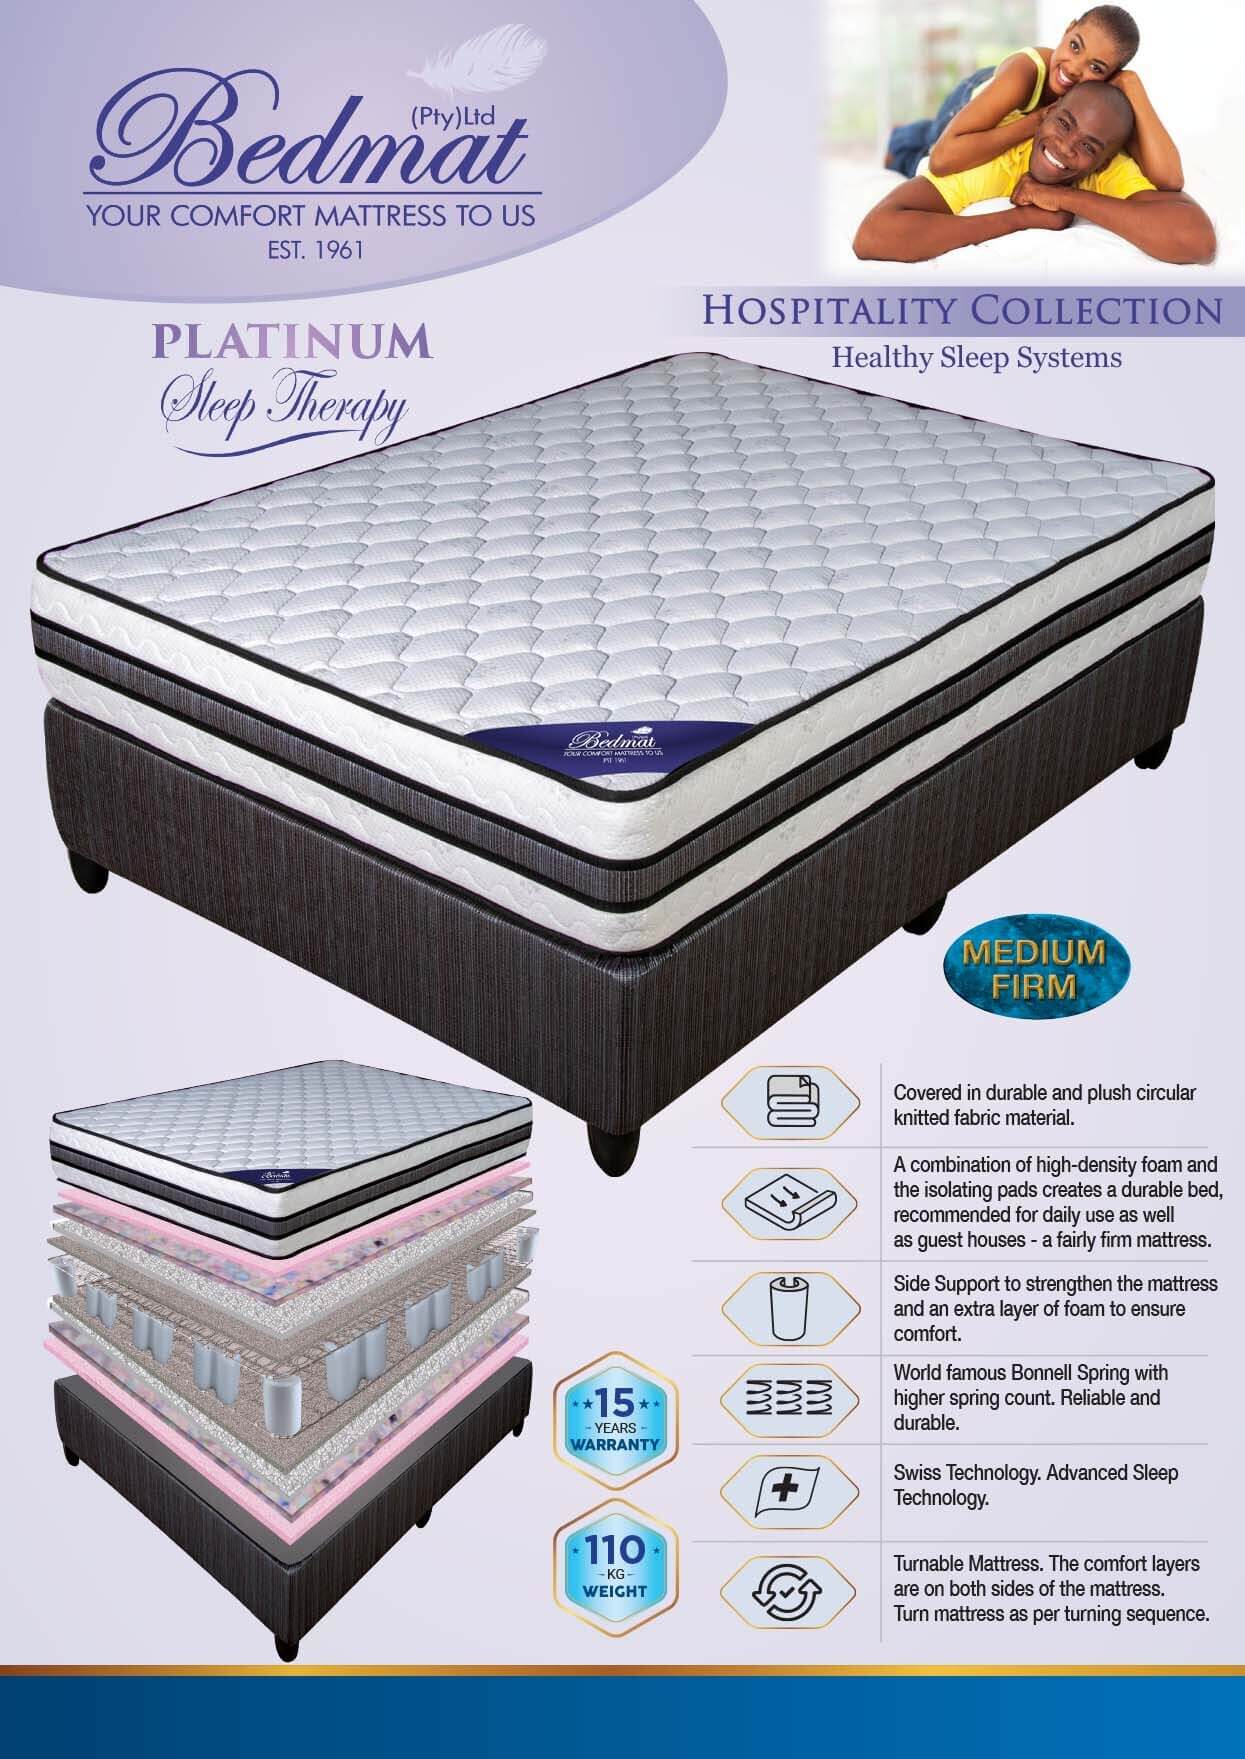 Platinum mattress and details